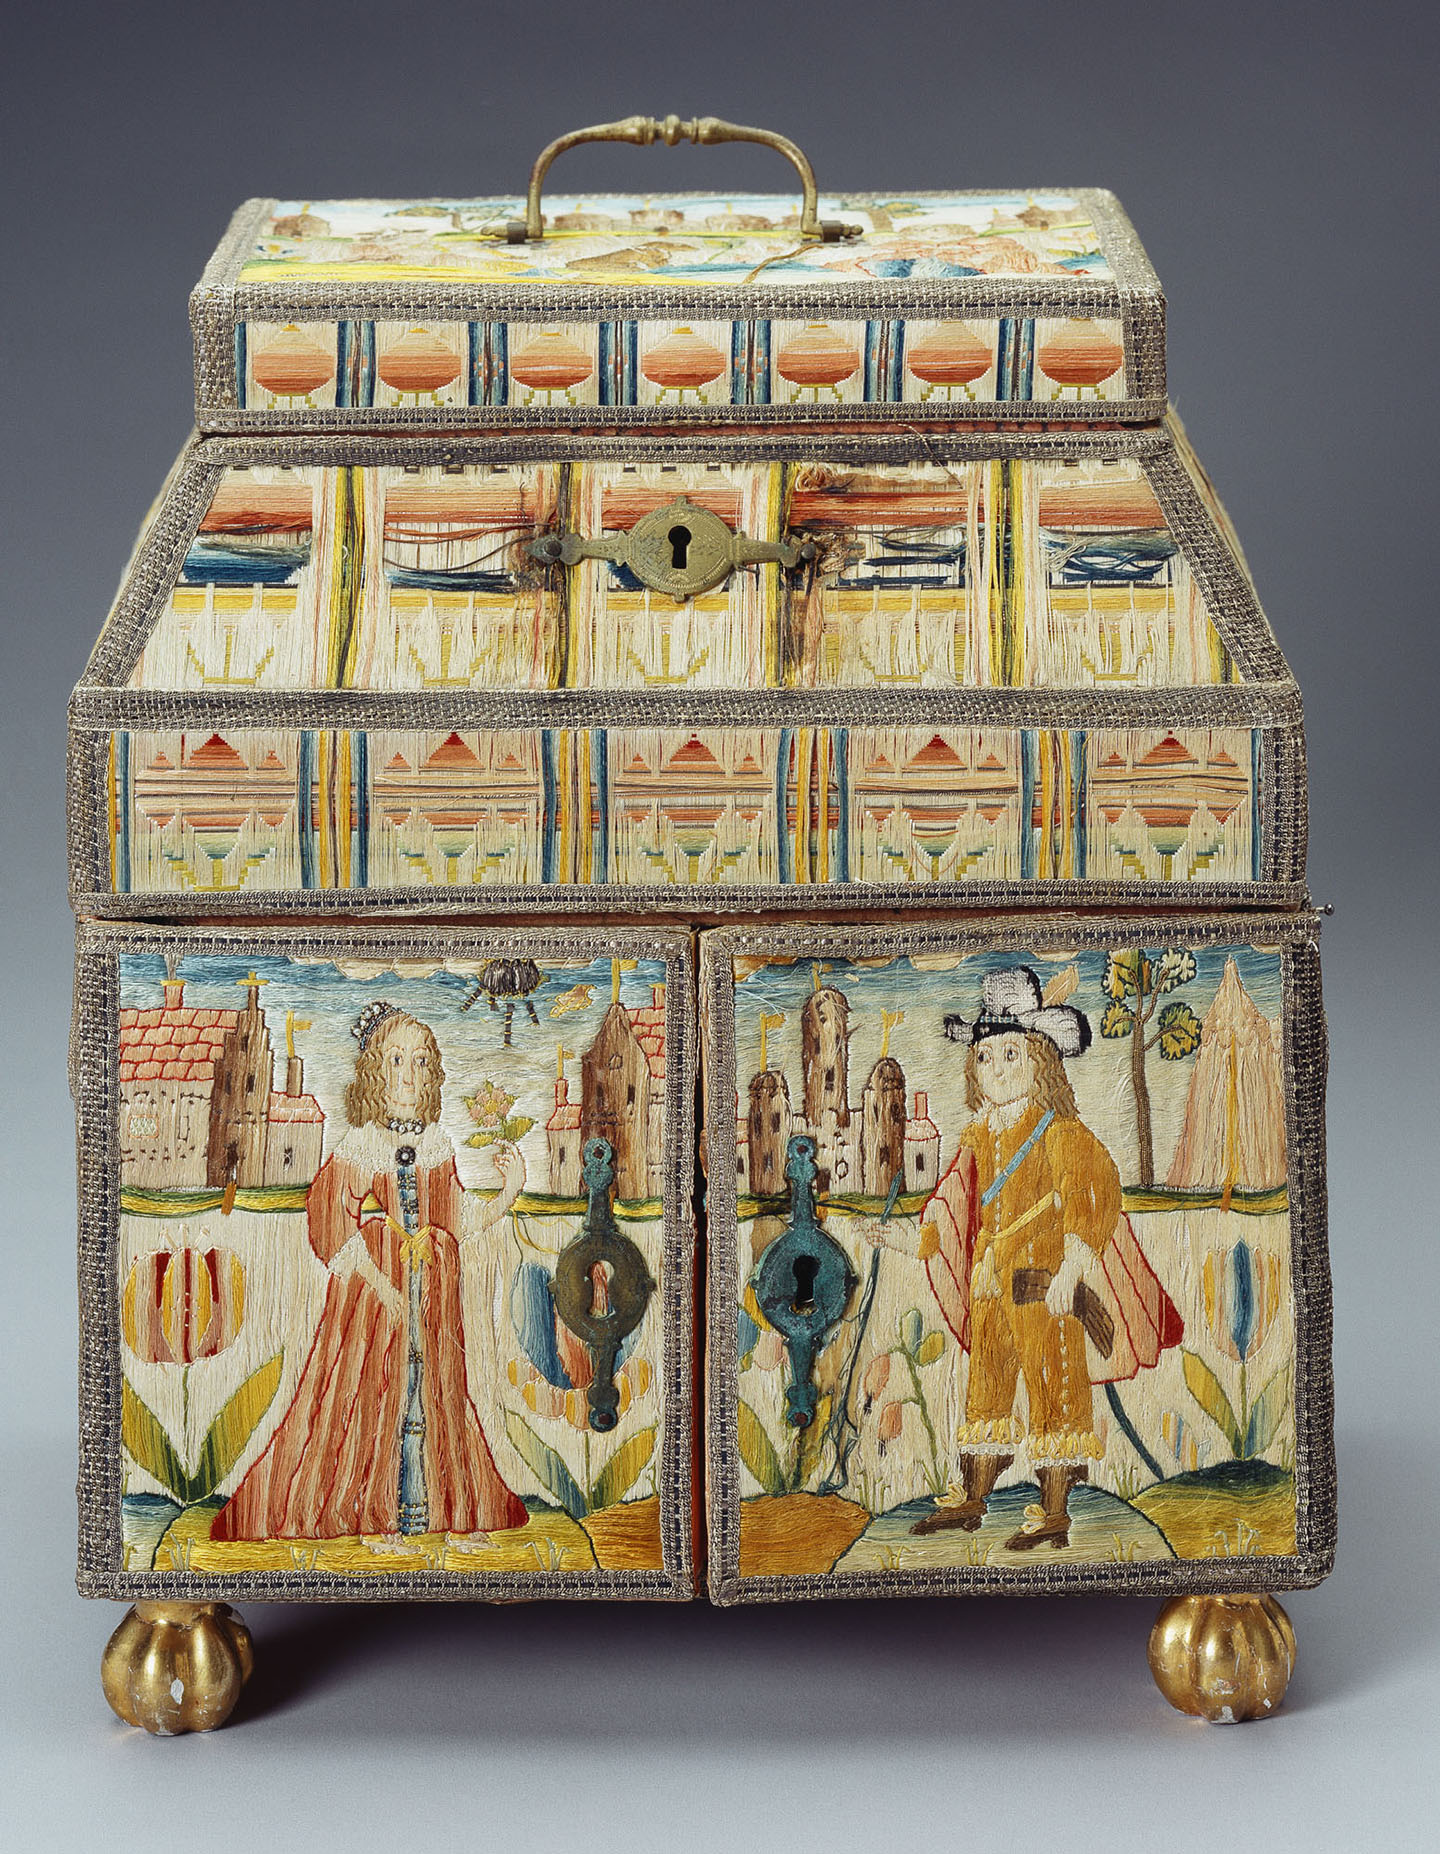 Tráp đựng đồ may thêu, năm 1626-1649, sản xuất ở Little Gidding, Cambridgeshire, Anh quốc. Lụa thêu, gương thủy tinh, da, chỉ bạc, len, gỗ mạ vàng; Kích thước 280mm x 240mm x 170mm. (Ảnh: Royal Collection Trust)